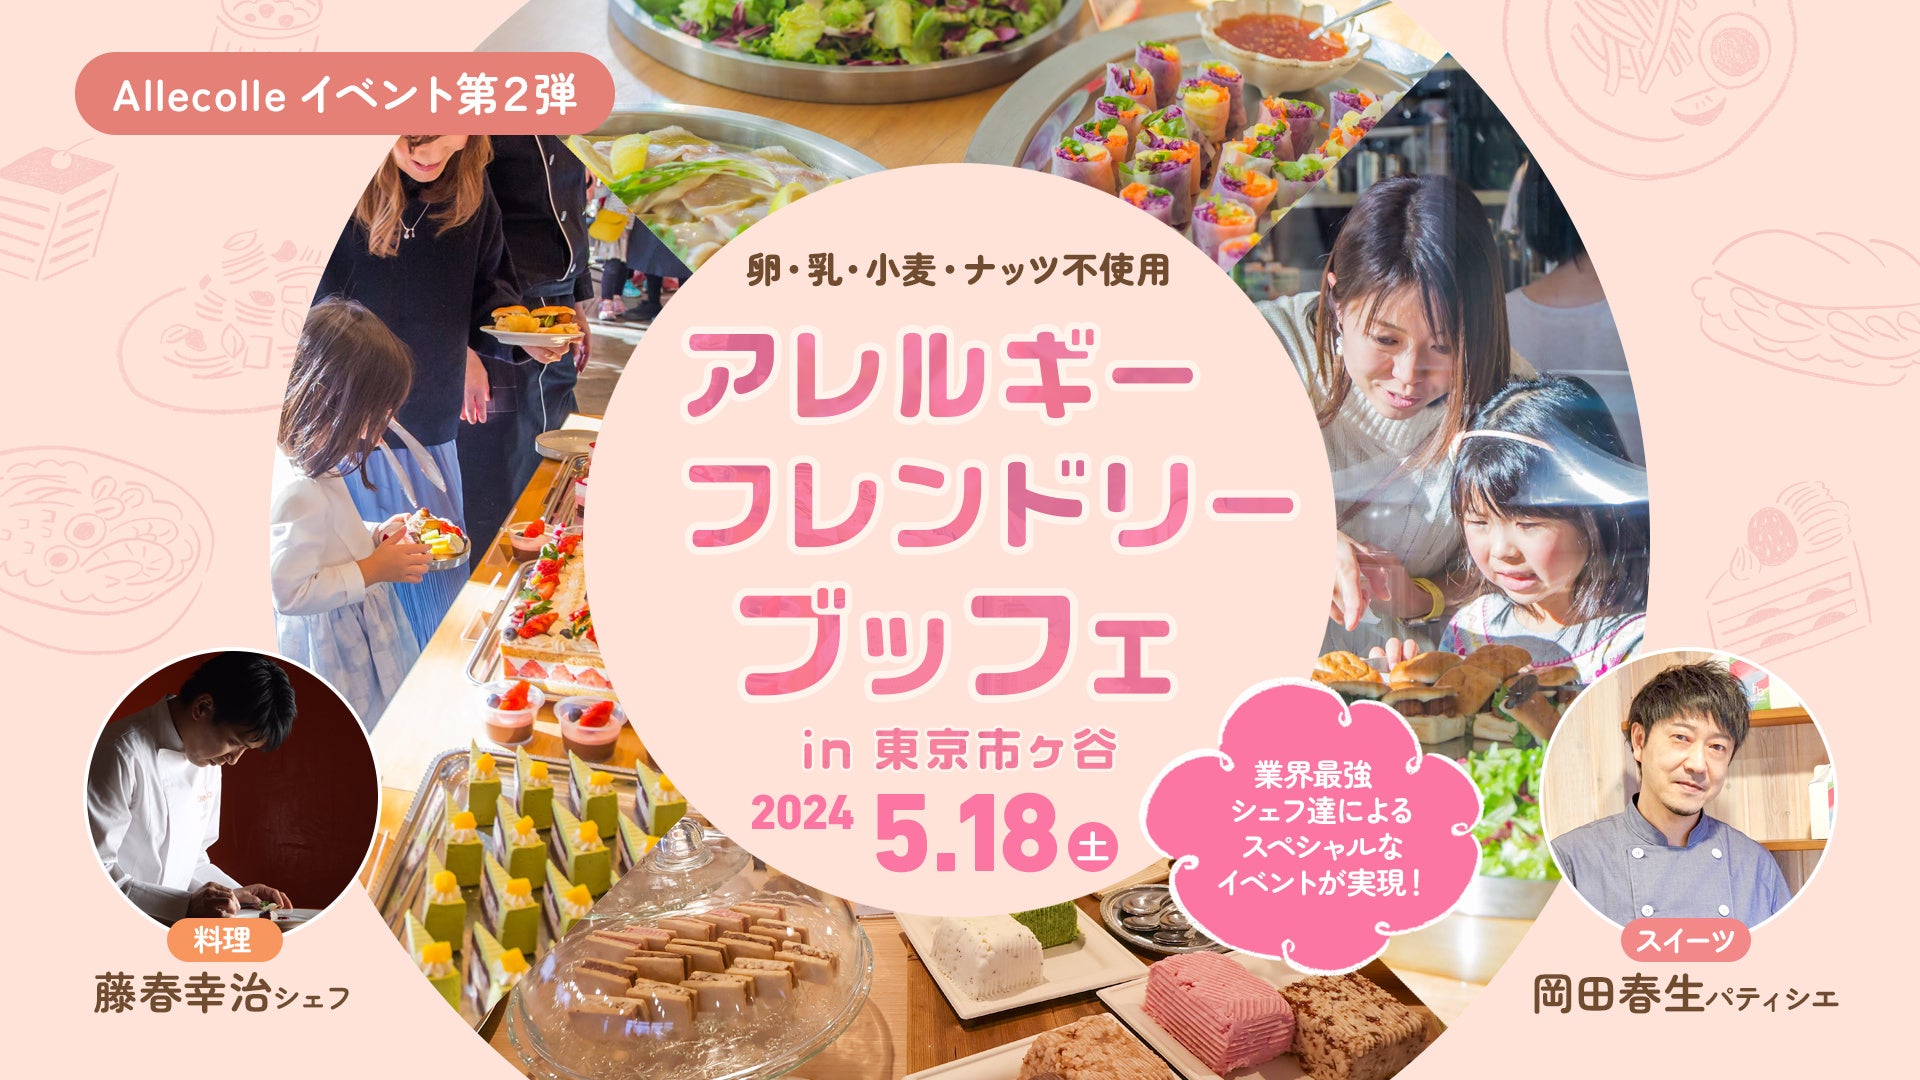 応募開始4分で満席、20分後には200名を超えるキャンセル待ちと大好評！食物アレルギーを持つ子どもたちが、自由に食べたいものを選べる、ブッフェイベントを2024年5月18日（土）東京で開催